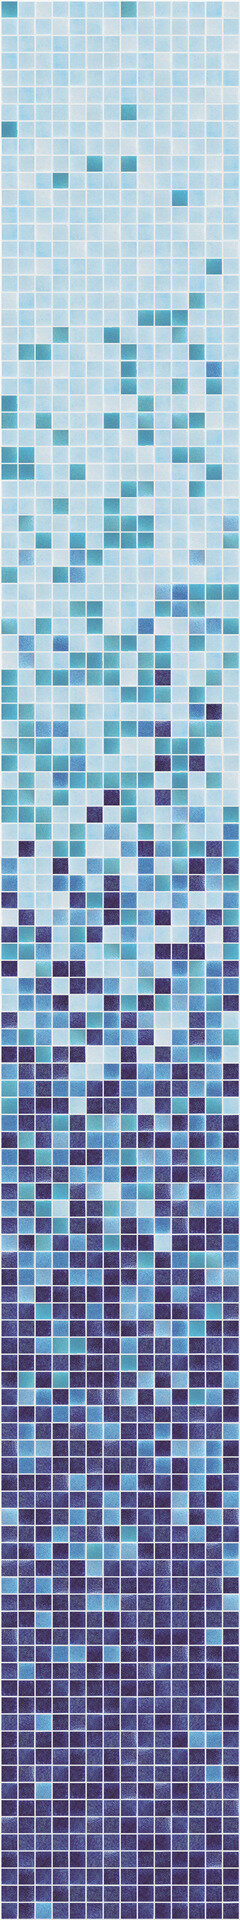 Мозаика облицовочная стеклянная Hisbalit Degradados Piscinas Marina Niebla Non-slip 2,5*2,5 ( м2)